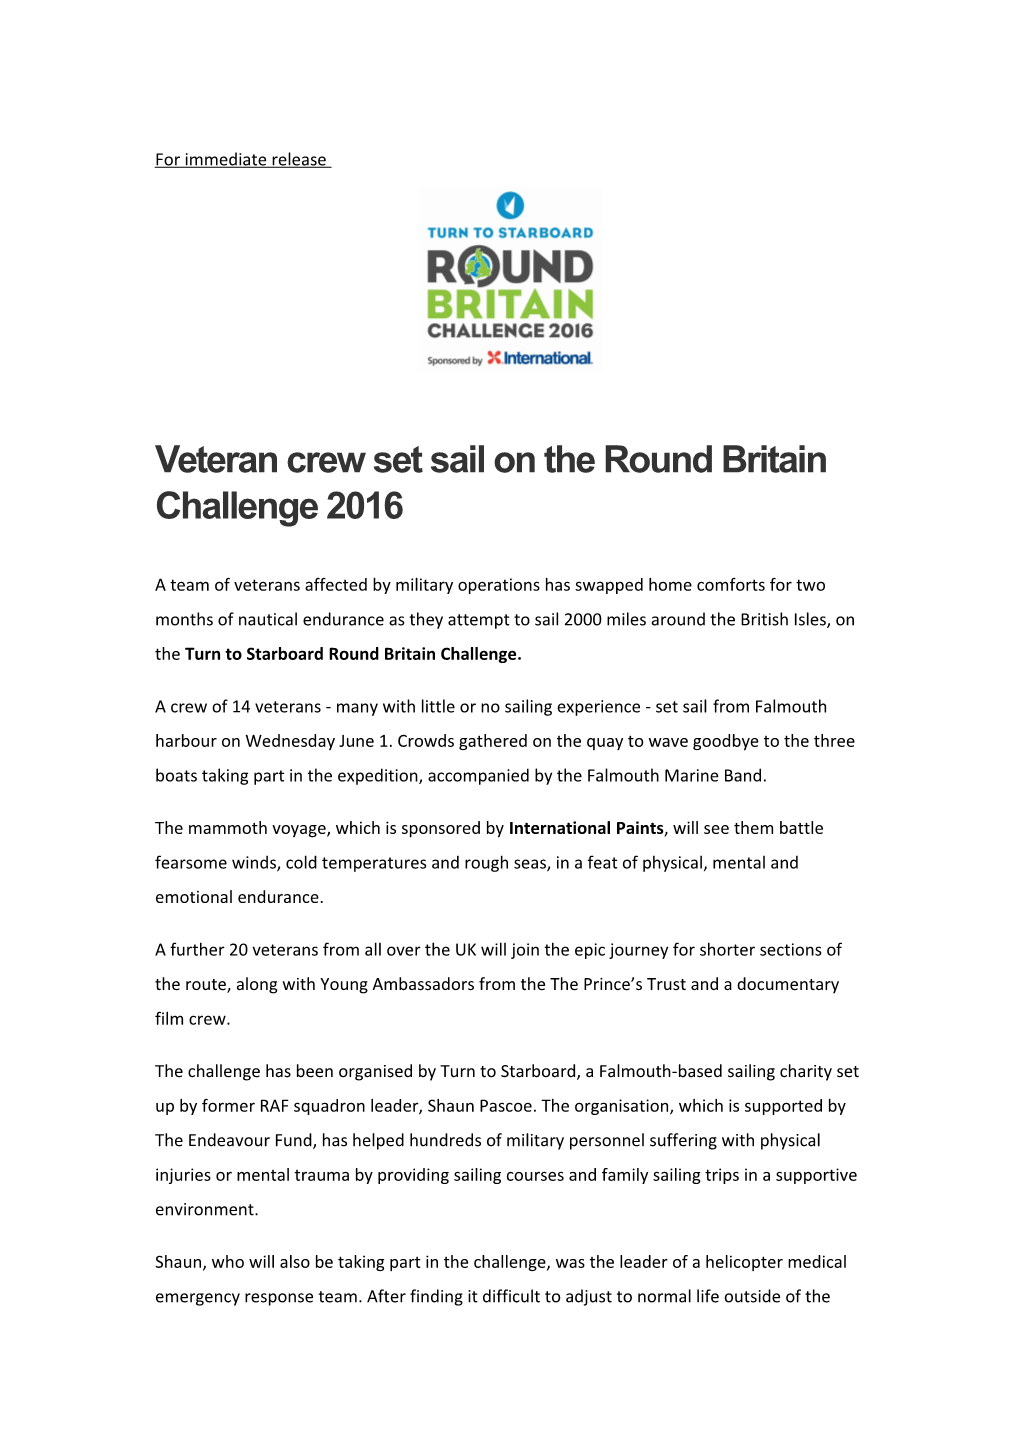 Veteran Crew Set Sail on the Round Britain Challenge 2016